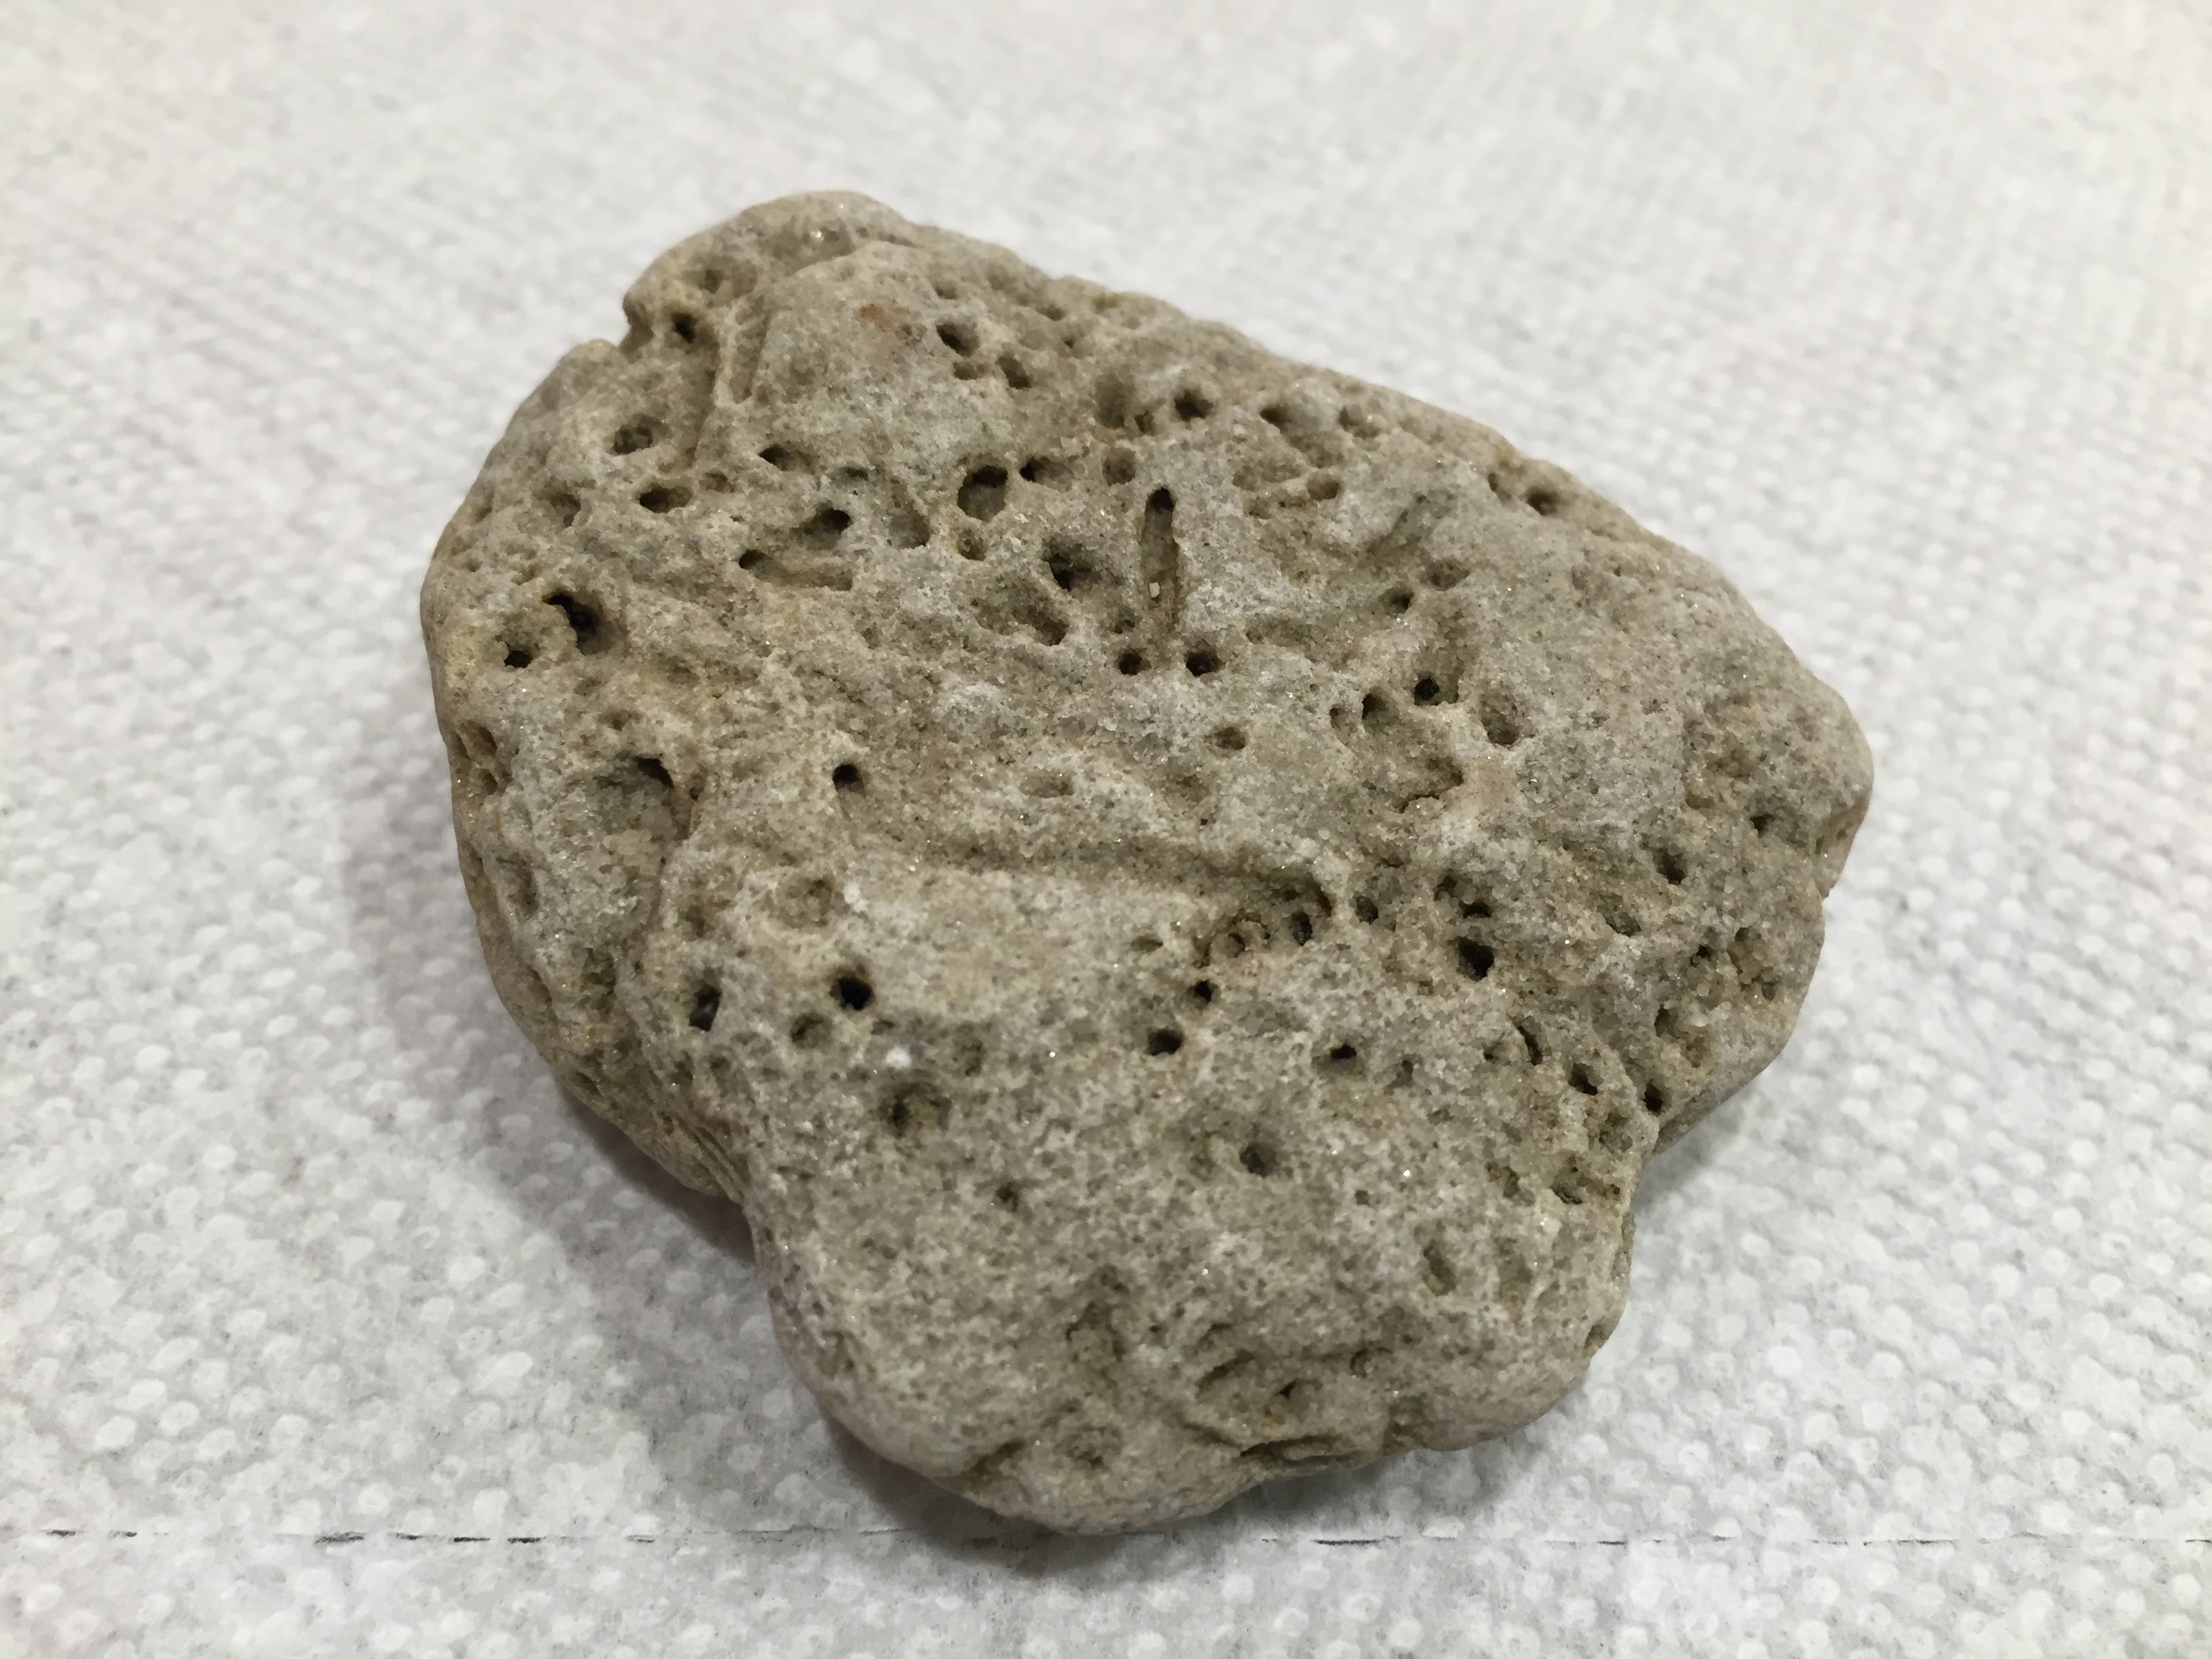 Spongy Rocks